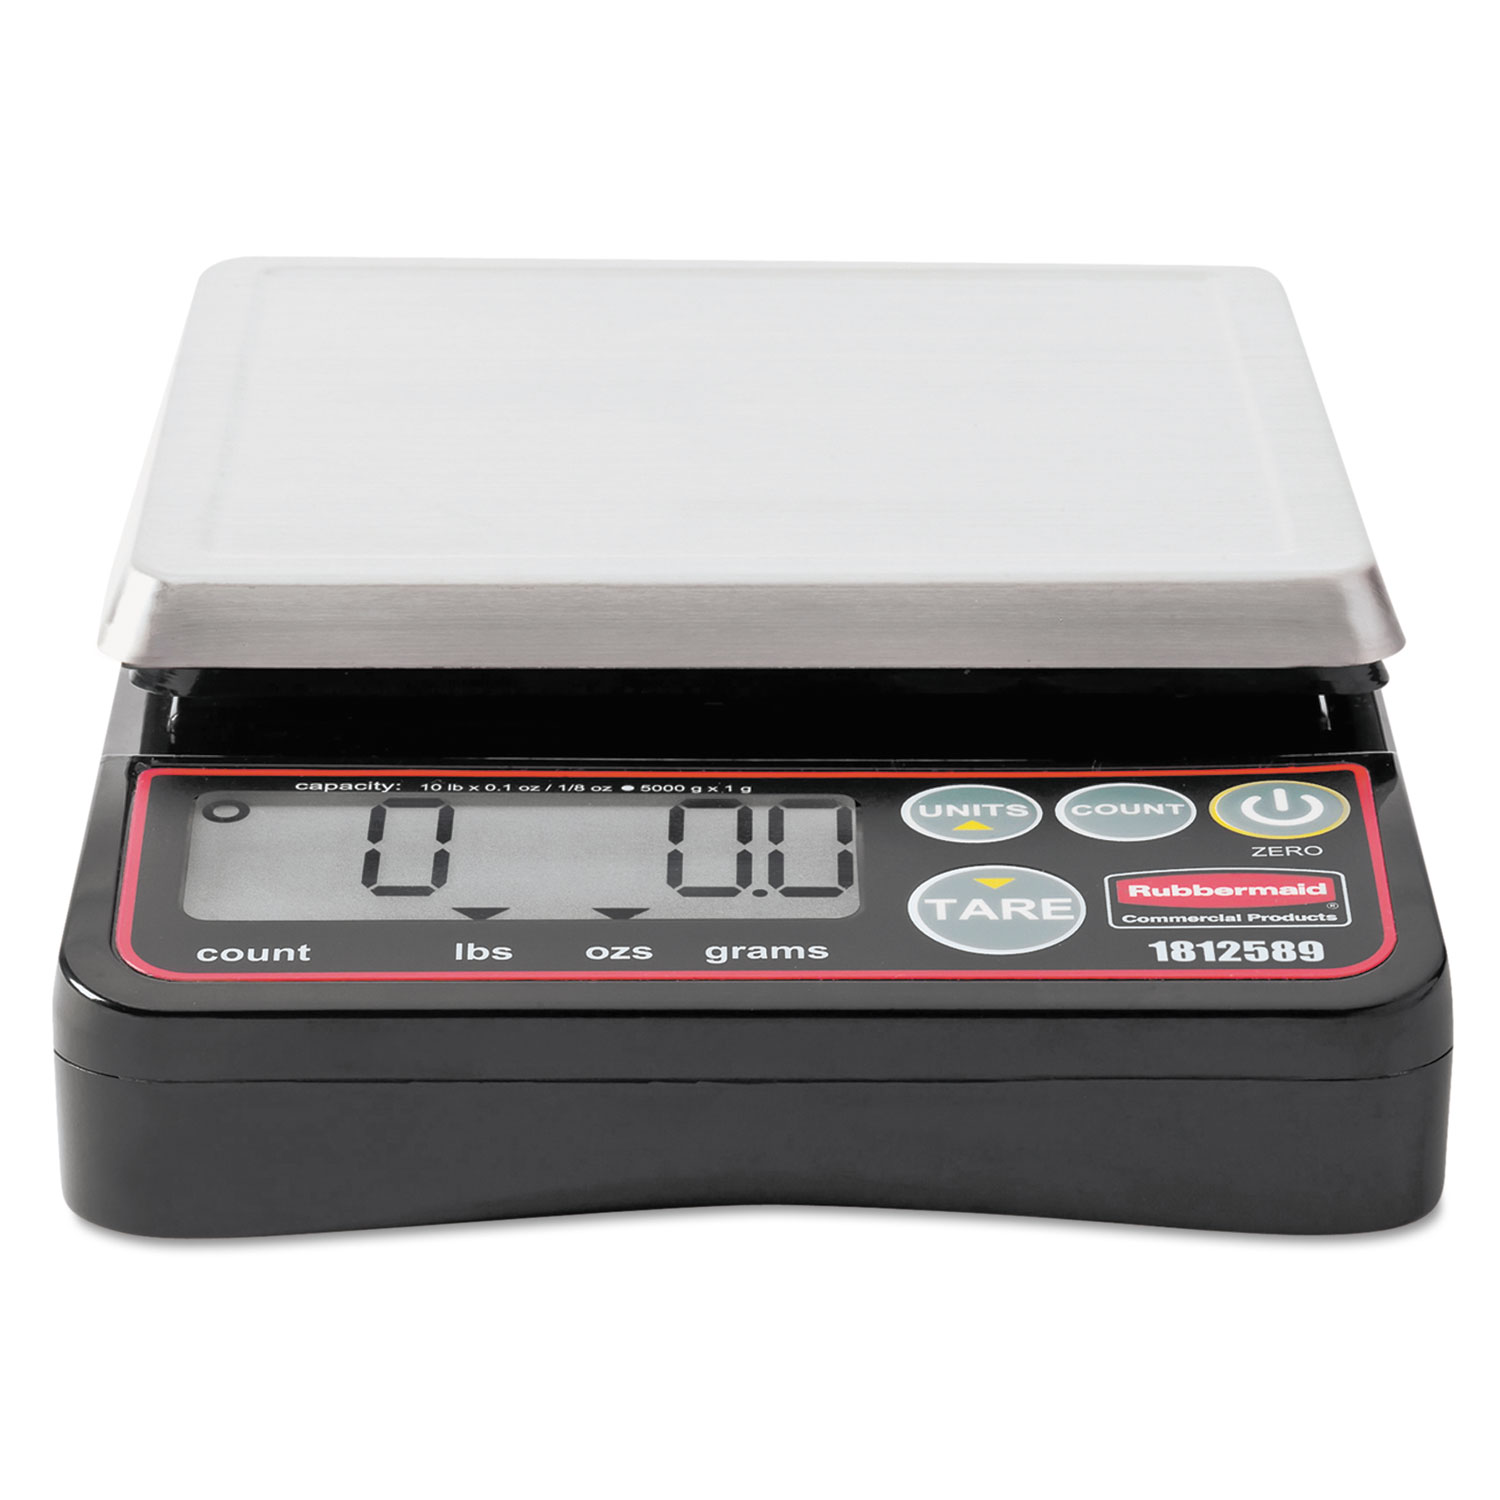 Pelouze Compact Digital Portion Control Scale, 10 lb Cap